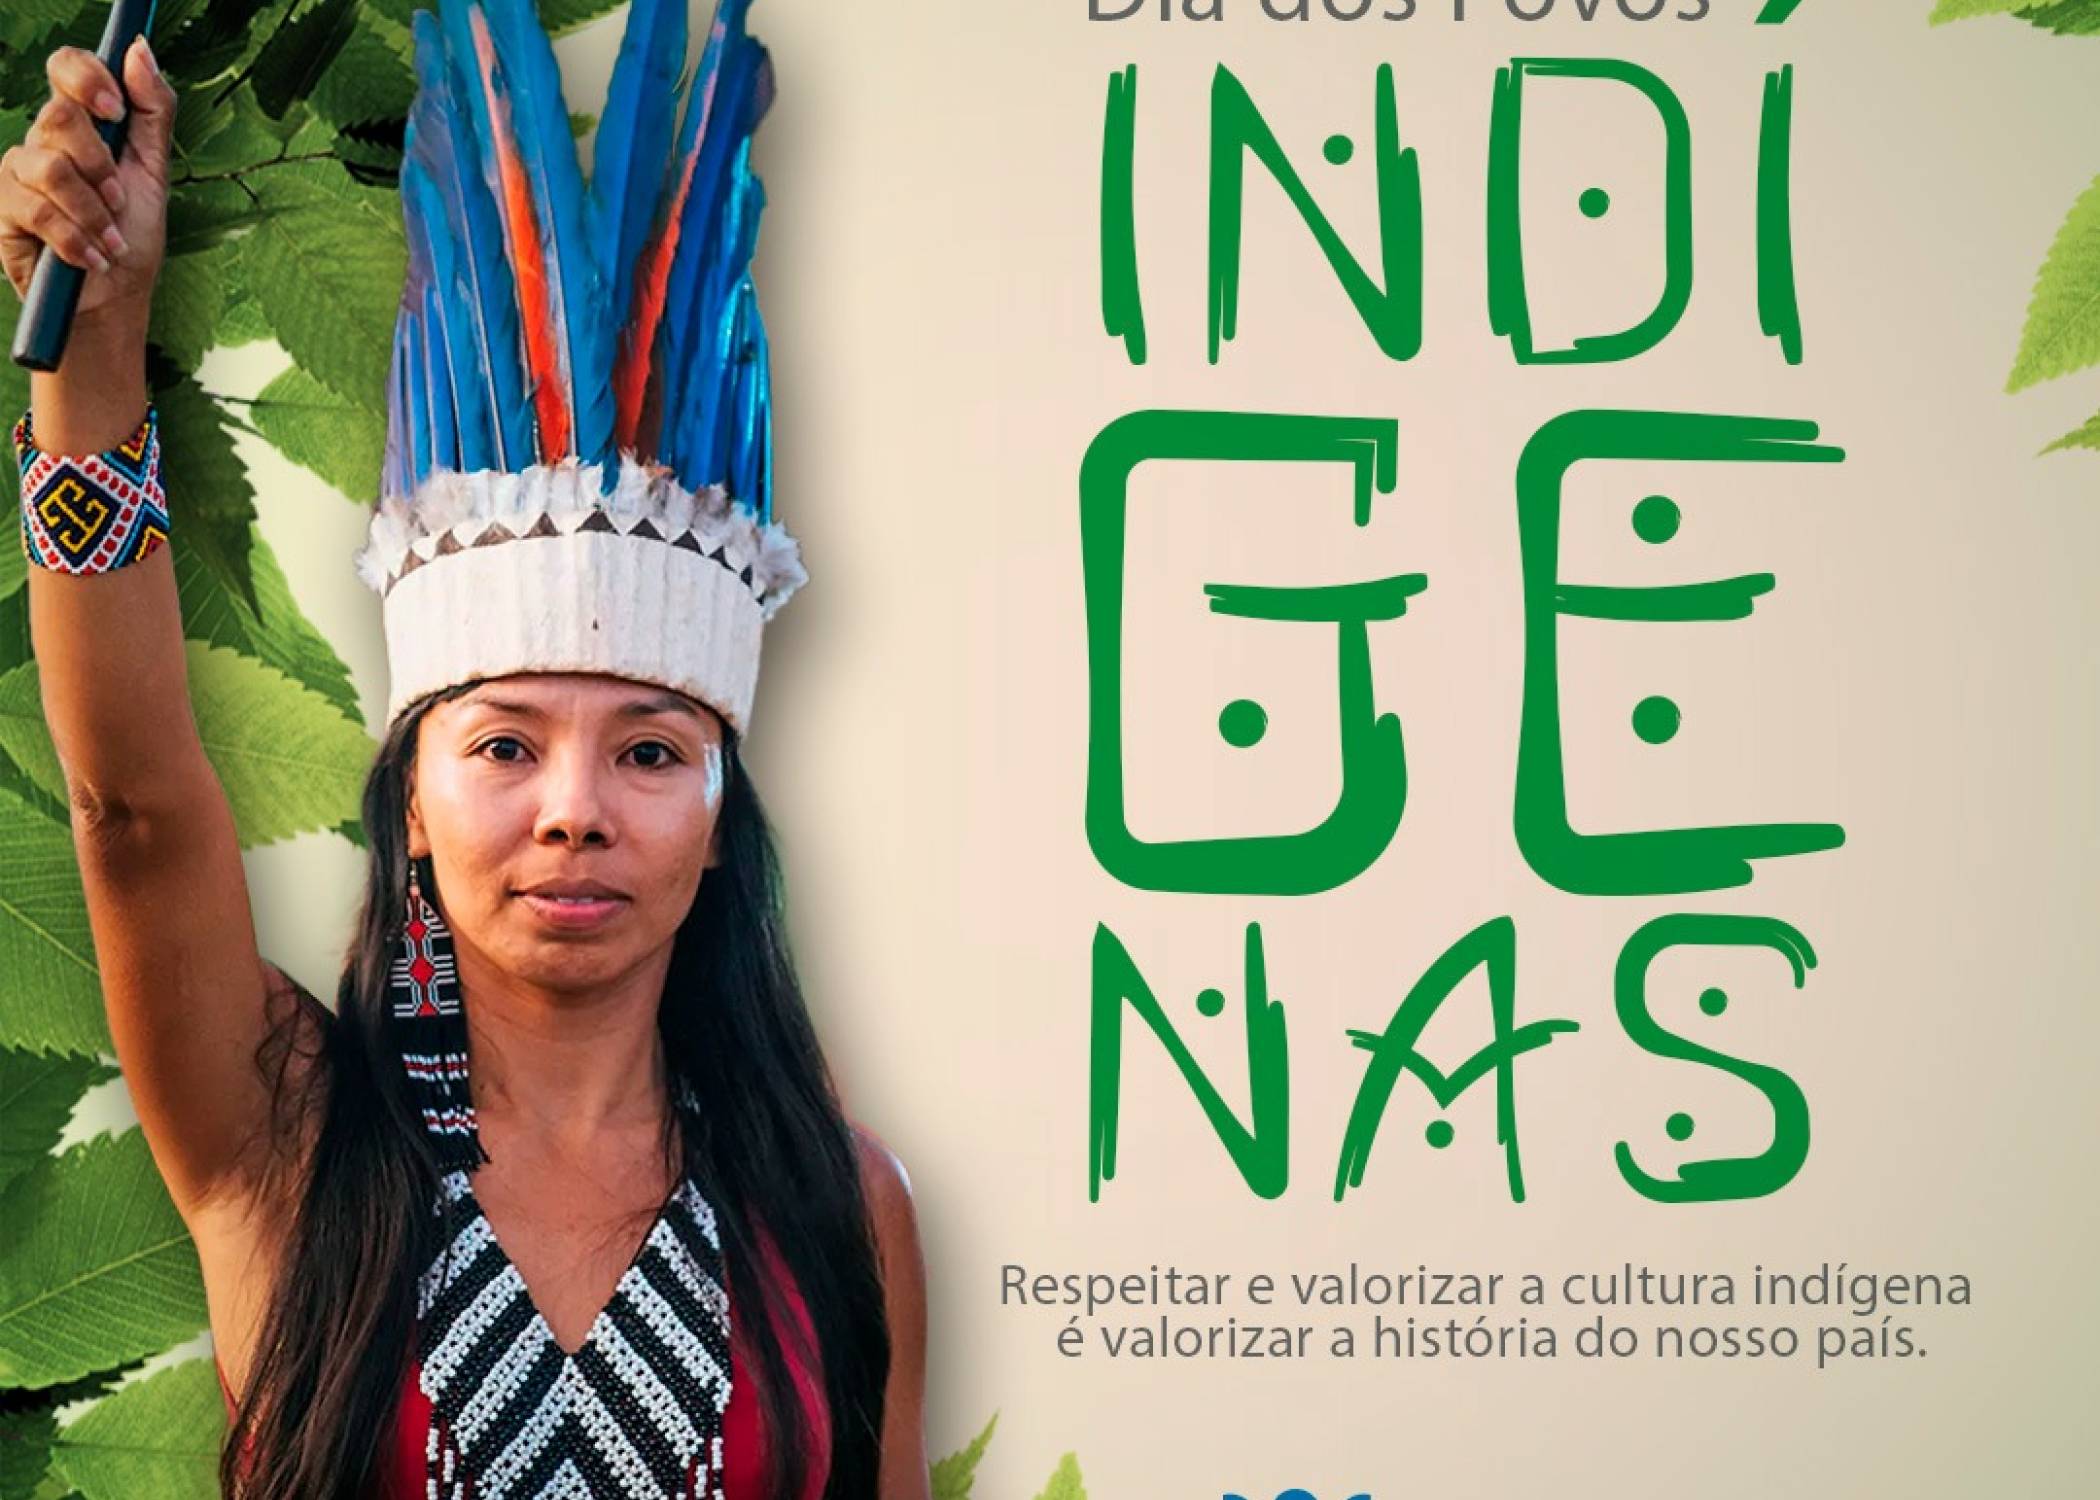 Hoje é o Dia dos Povos Indígenas!